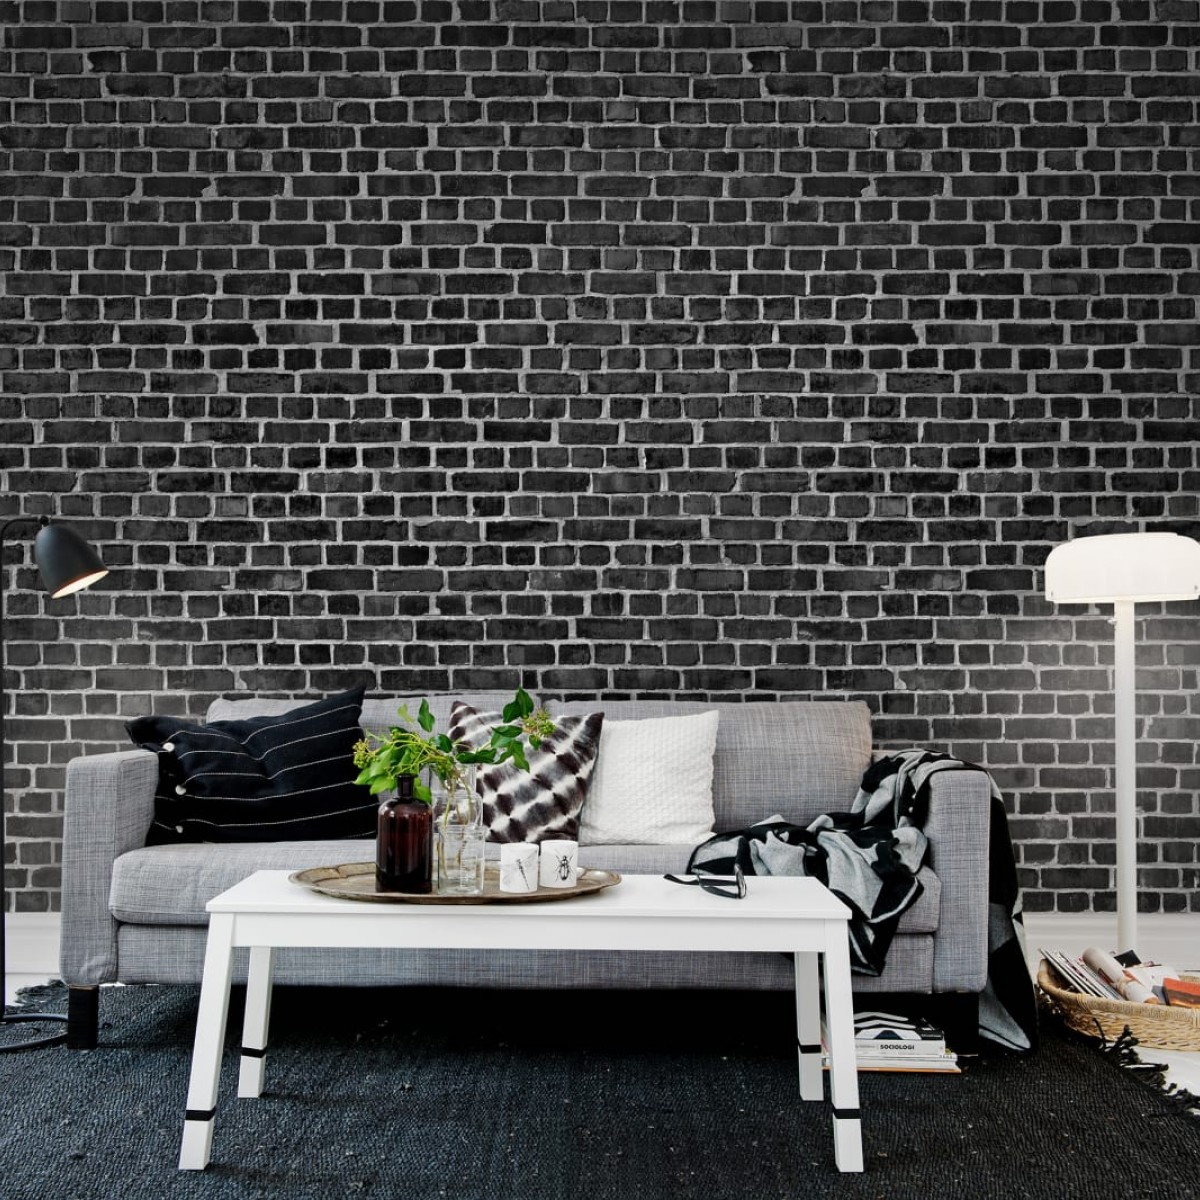 Fototapet Rebel Walls RBW-R10962. Conține culorile: Negru, Negru Închis, Aluminiu, Aluminiu-Alb, Gri, Gri Grafit, Alb, Alb Trafic